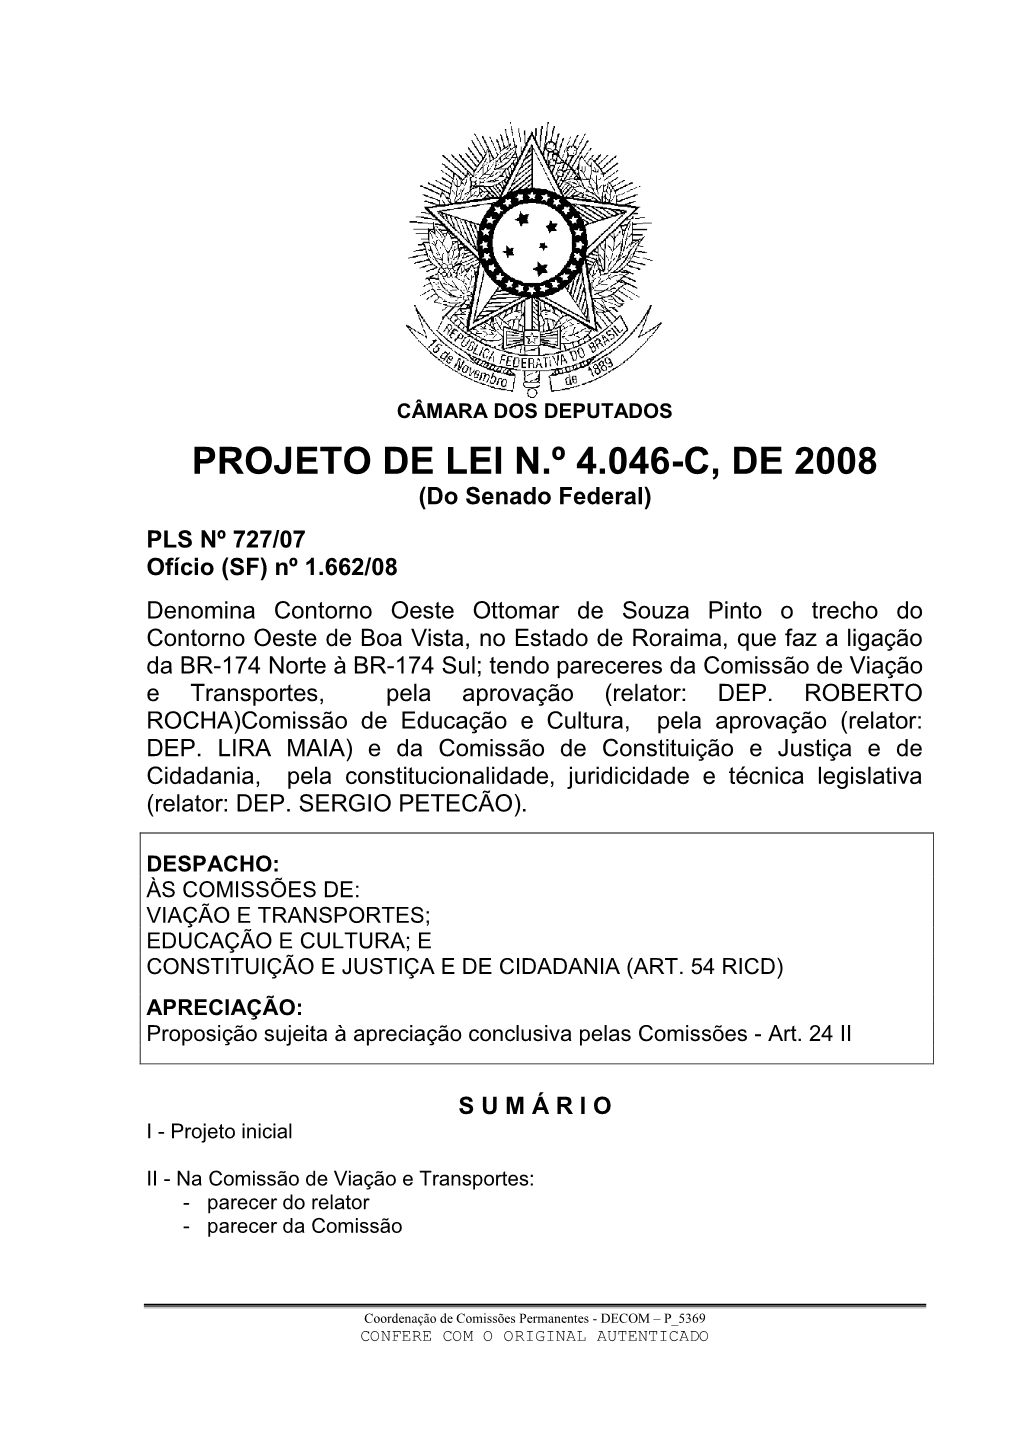 PROJETO DE LEI N.º 4.046-C, DE 2008 (Do Senado Federal)